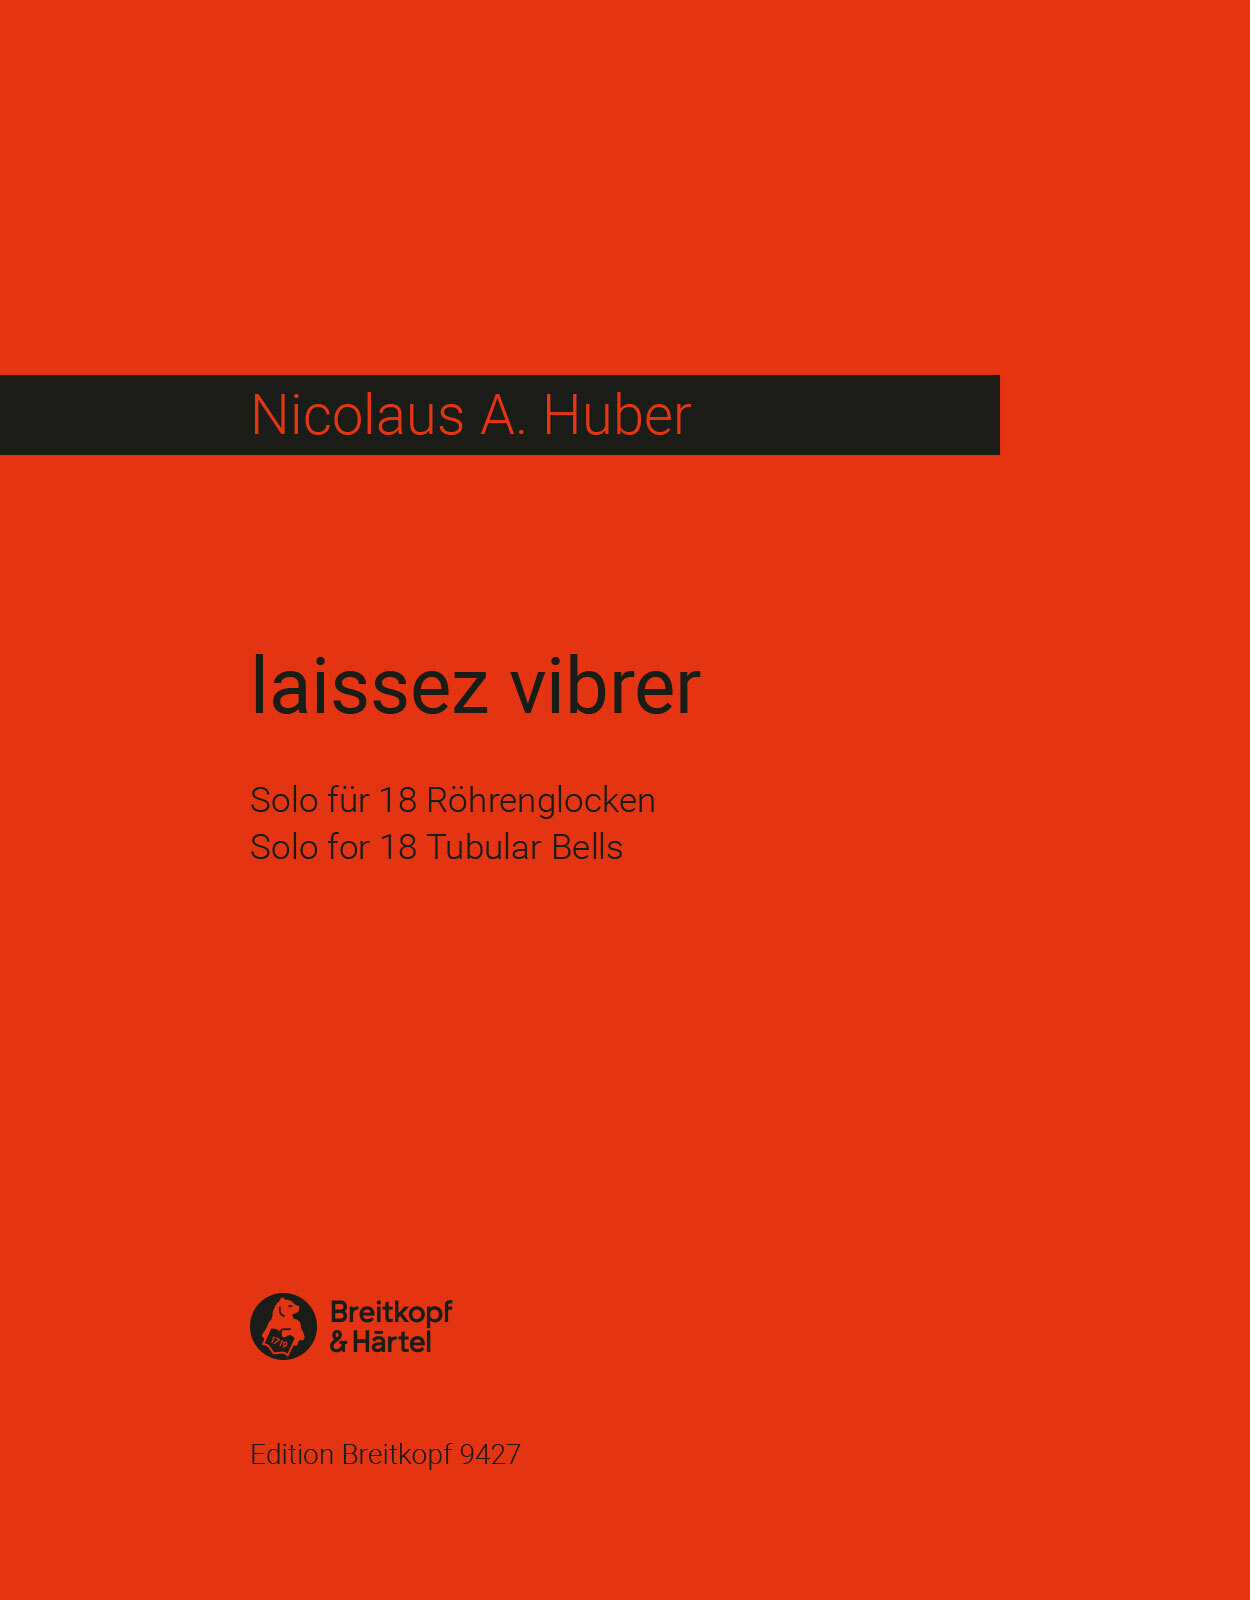 laissez vibrer (solo for 18 Tubular Bells)